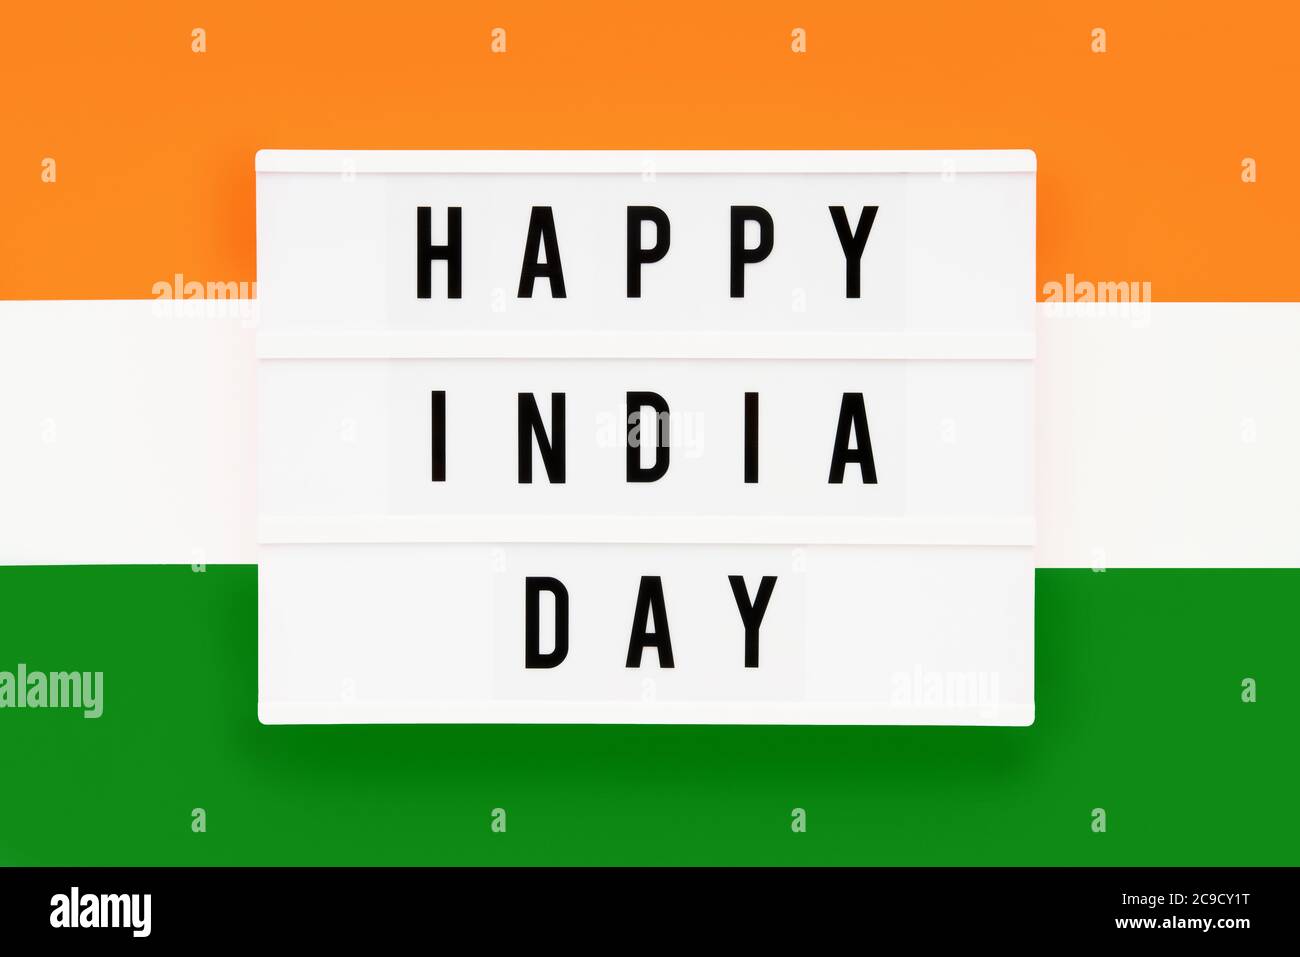 HAPPY INDIA DAY in einem Leuchtkasten auf einem Hintergrund der indischen Flagge Farbe geschrieben. Datum des Unabhängigkeitstages. Draufsicht. Stockfoto